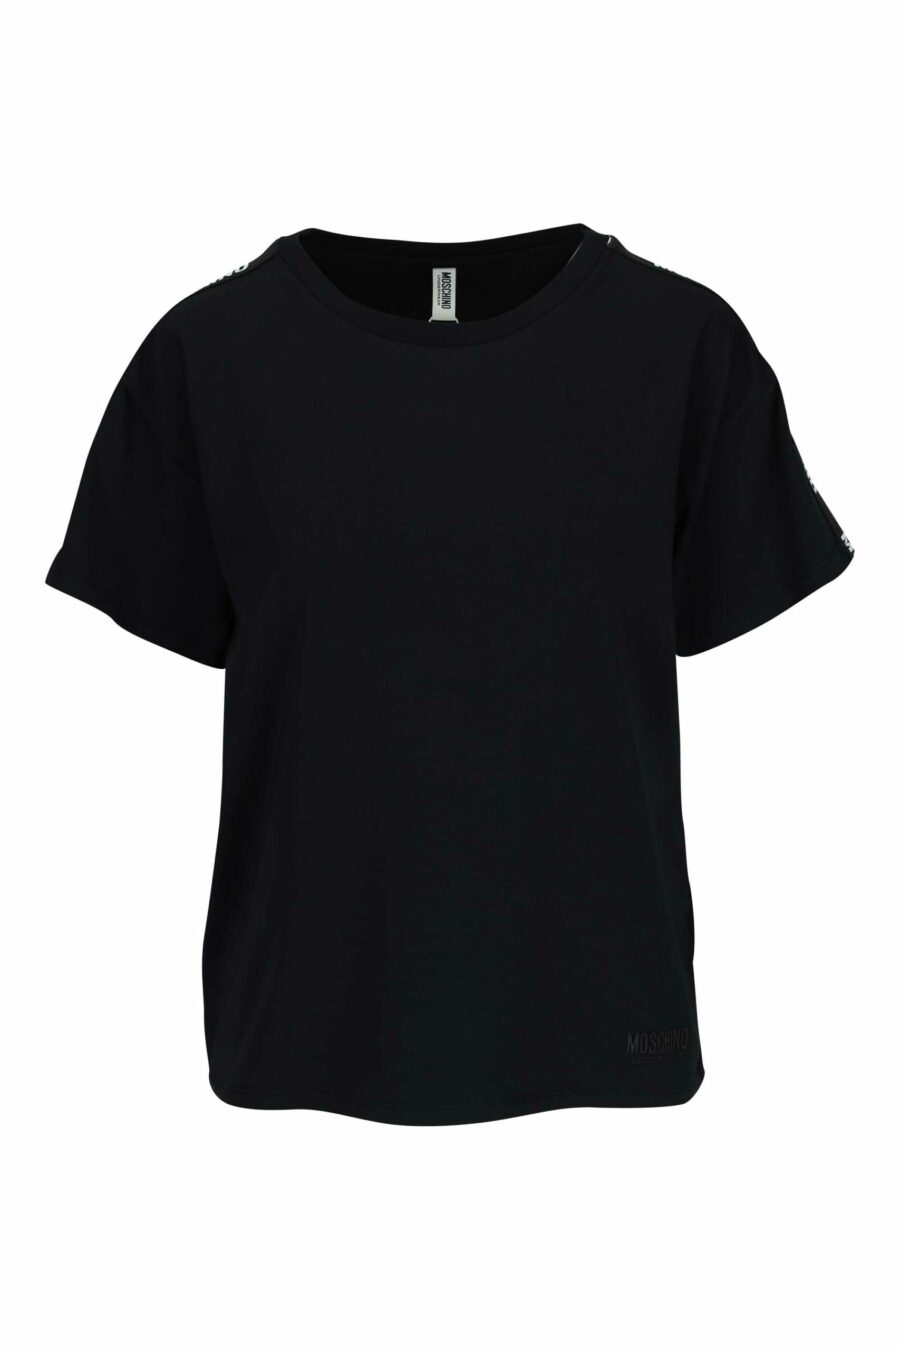 Schwarzes T-Shirt mit weißem Schulterband-Logo - 667113695549 skaliert